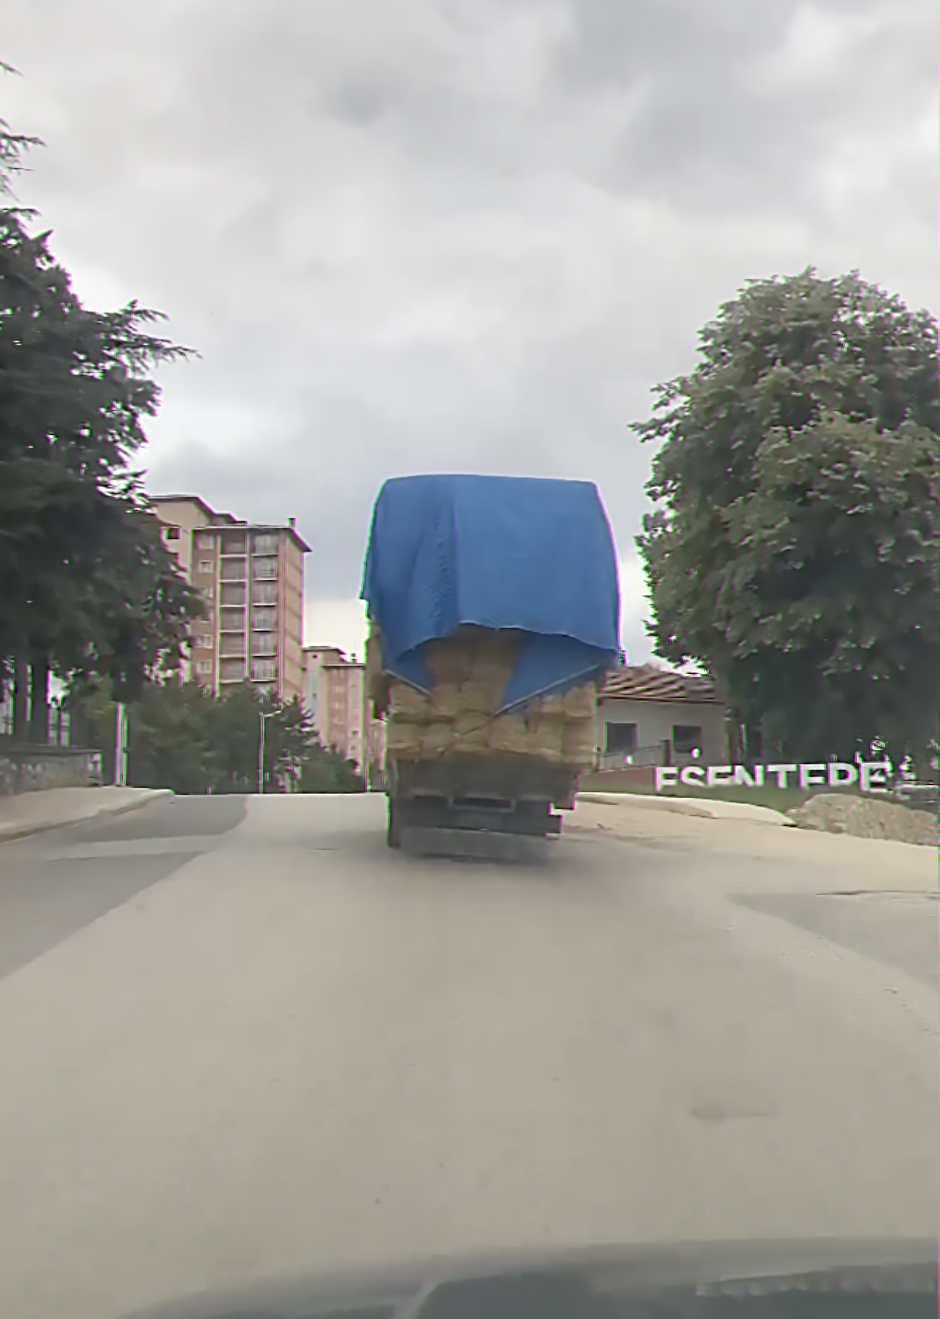 Karabük’te sürücü ve vatandaşların tehlikeli yolculukları kameraya yansıdı